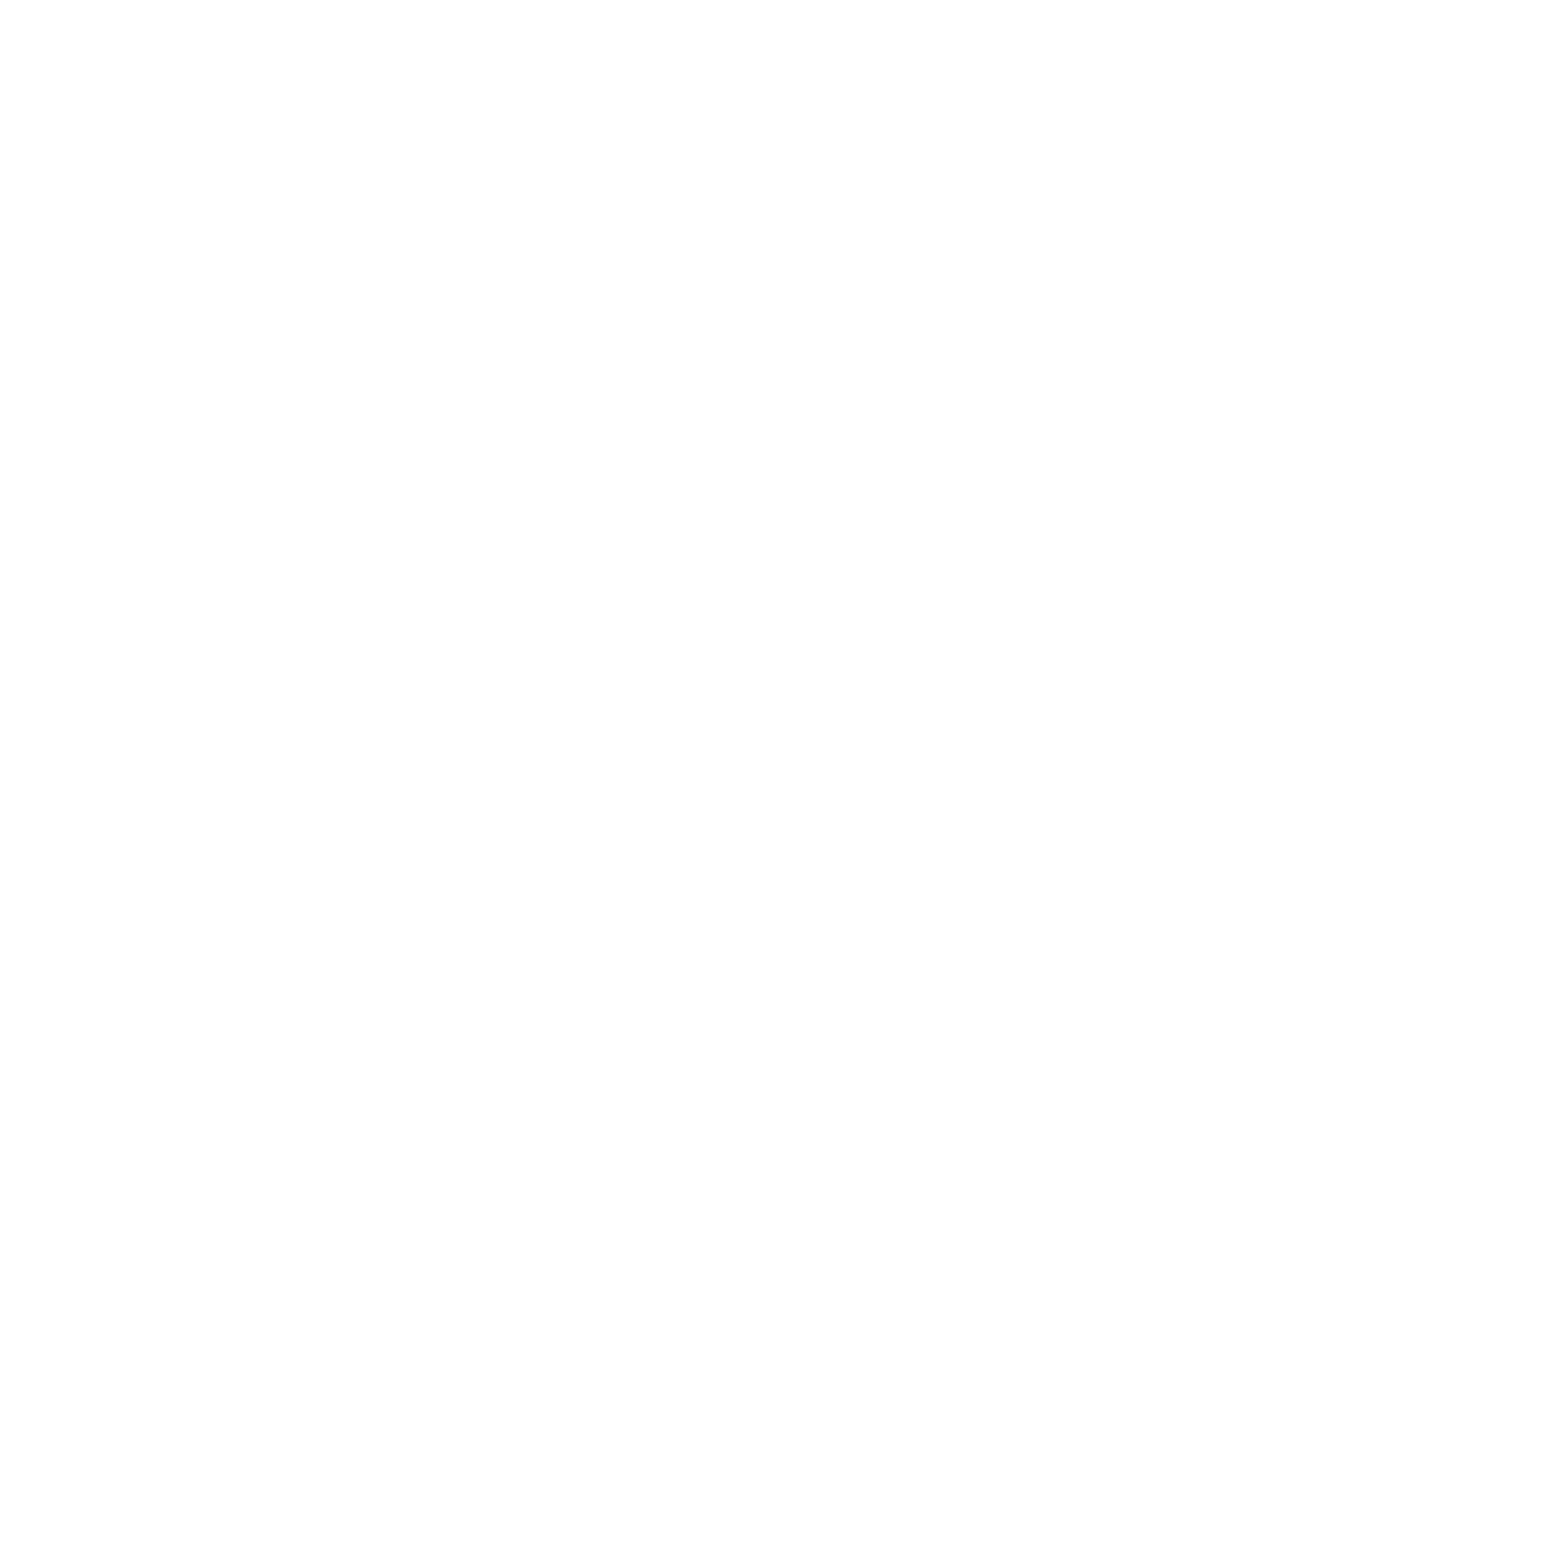 NeoGames logo for dark backgrounds (transparent PNG)